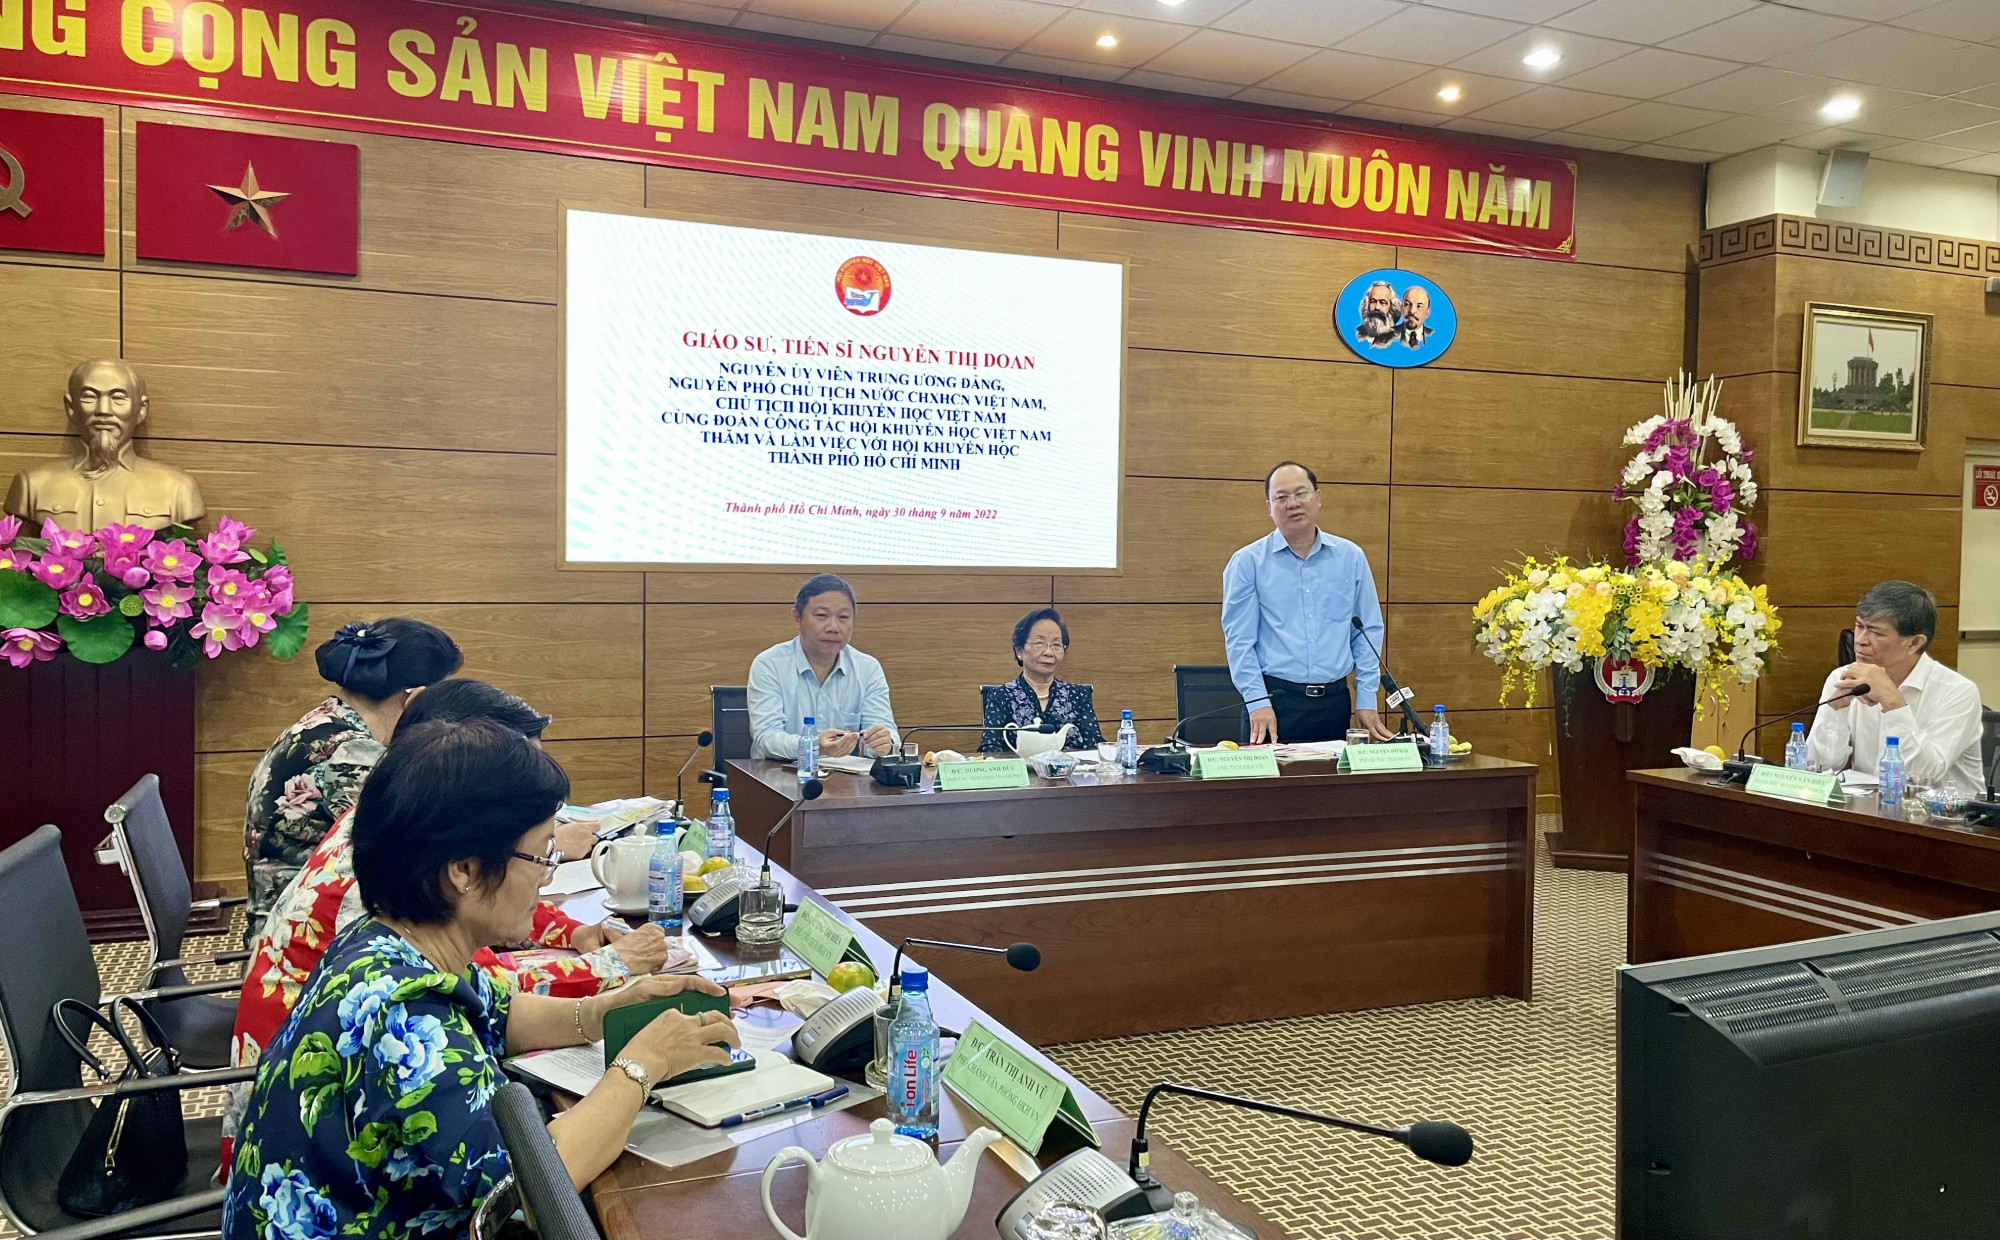 GS.TS. Nguyễn Thị Doan làm việc với TPHCM chiều 30/9